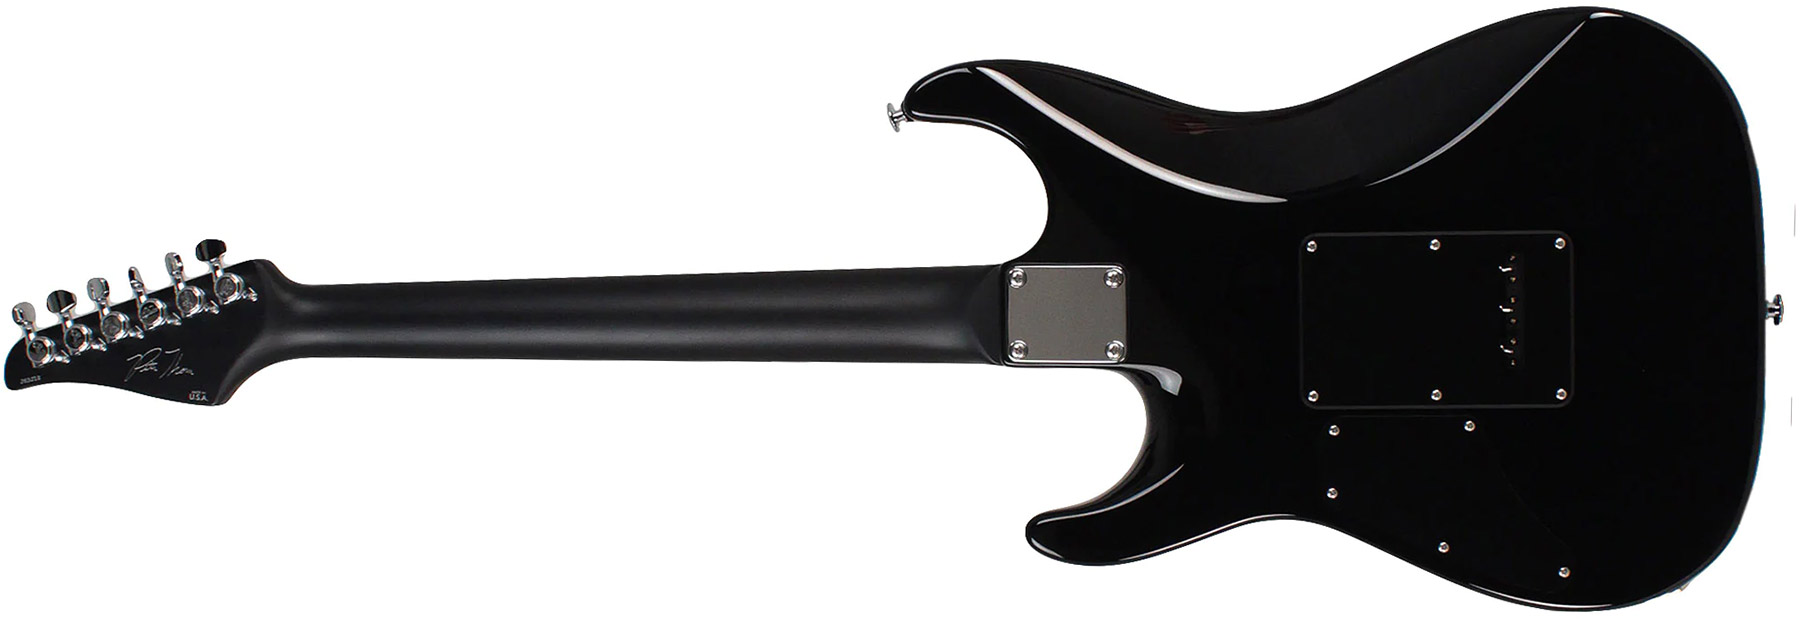 Suhr Pete Thorn Standard 01-sig-0012 Signature 2h Trem Rw - Ocean Turquoise Metallic - Guitare Électrique Forme Str - Variation 1